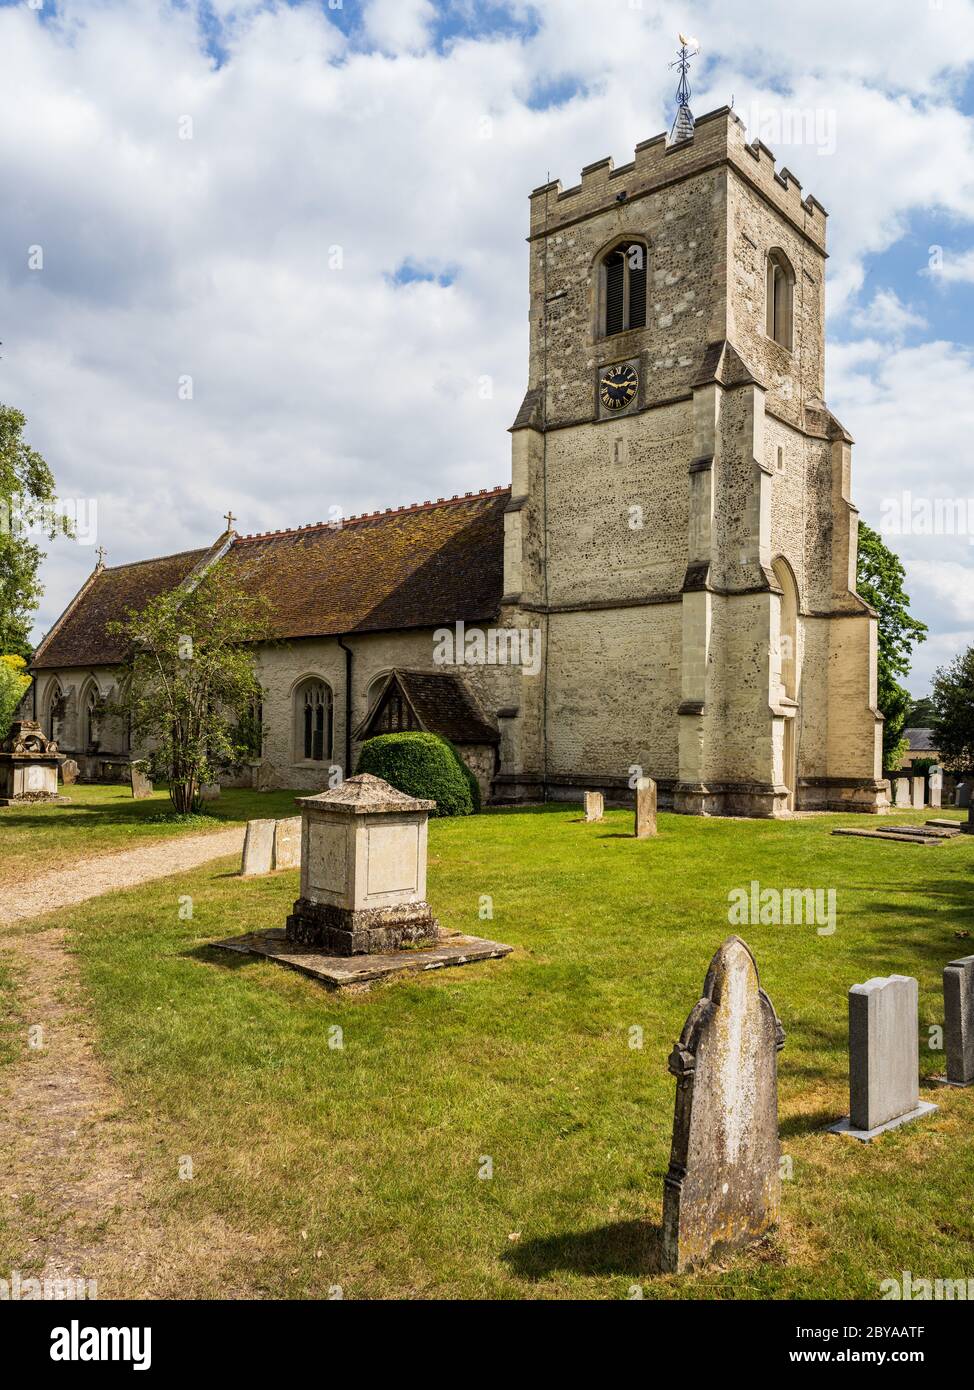 Église de Grantchester, célèbre pour les lignes du poème de Rupert Brooke 'The Old Vicarage, Grantchester' (1912) 'pays l'horloge de l'Église à dix à trois?' Banque D'Images